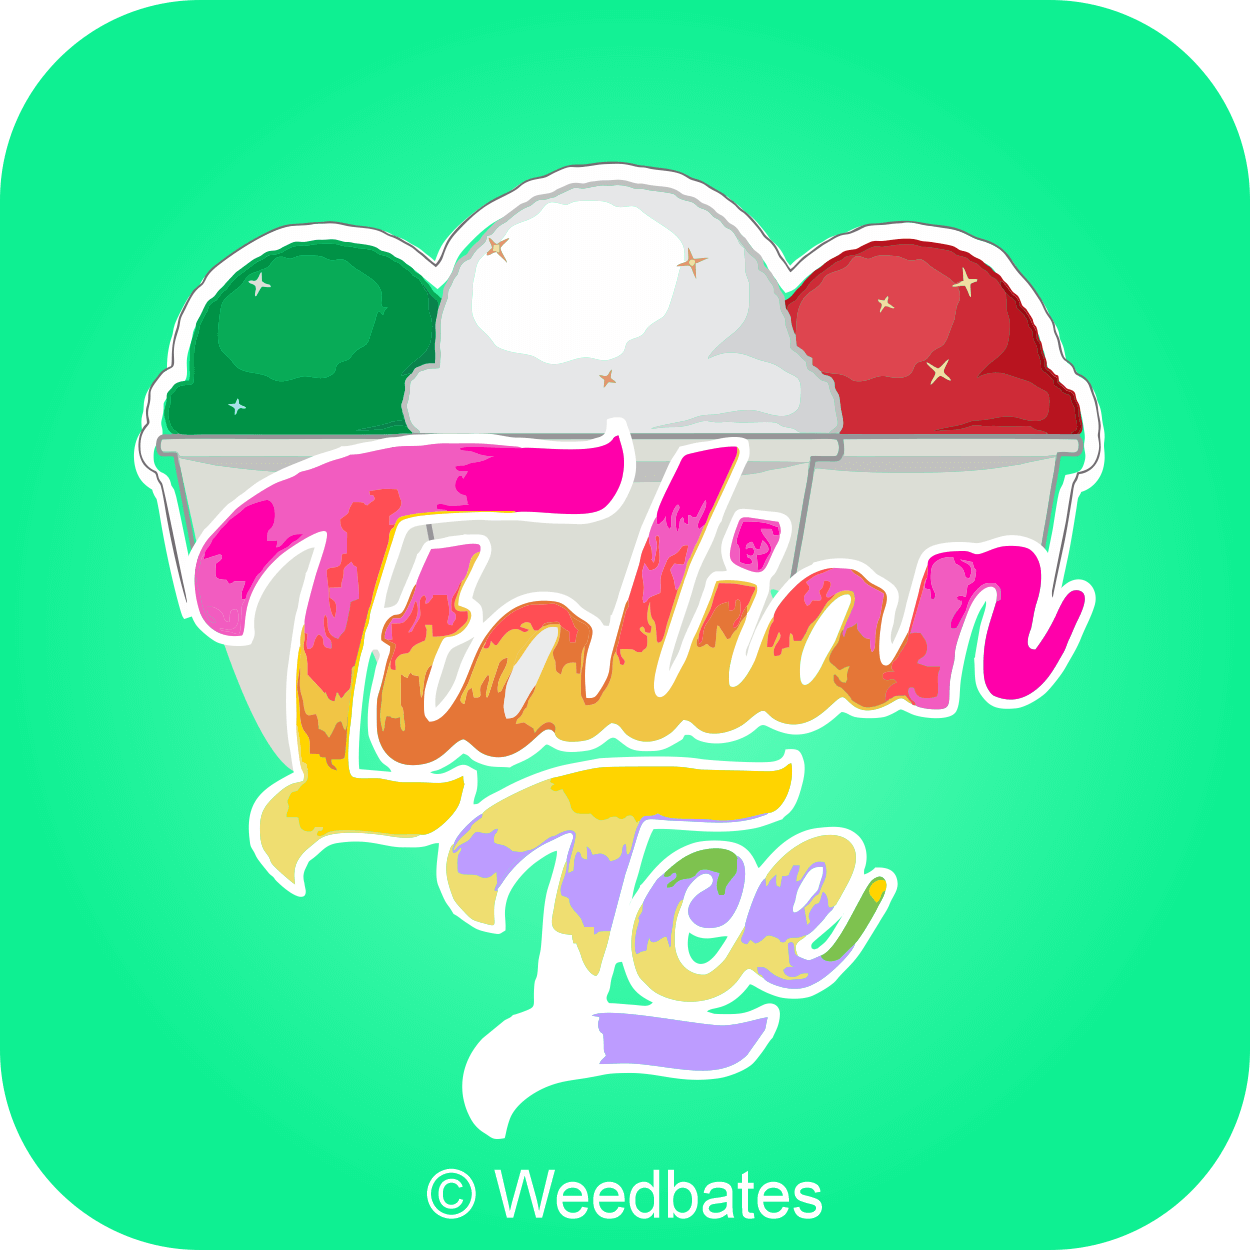 Italian Ice strain